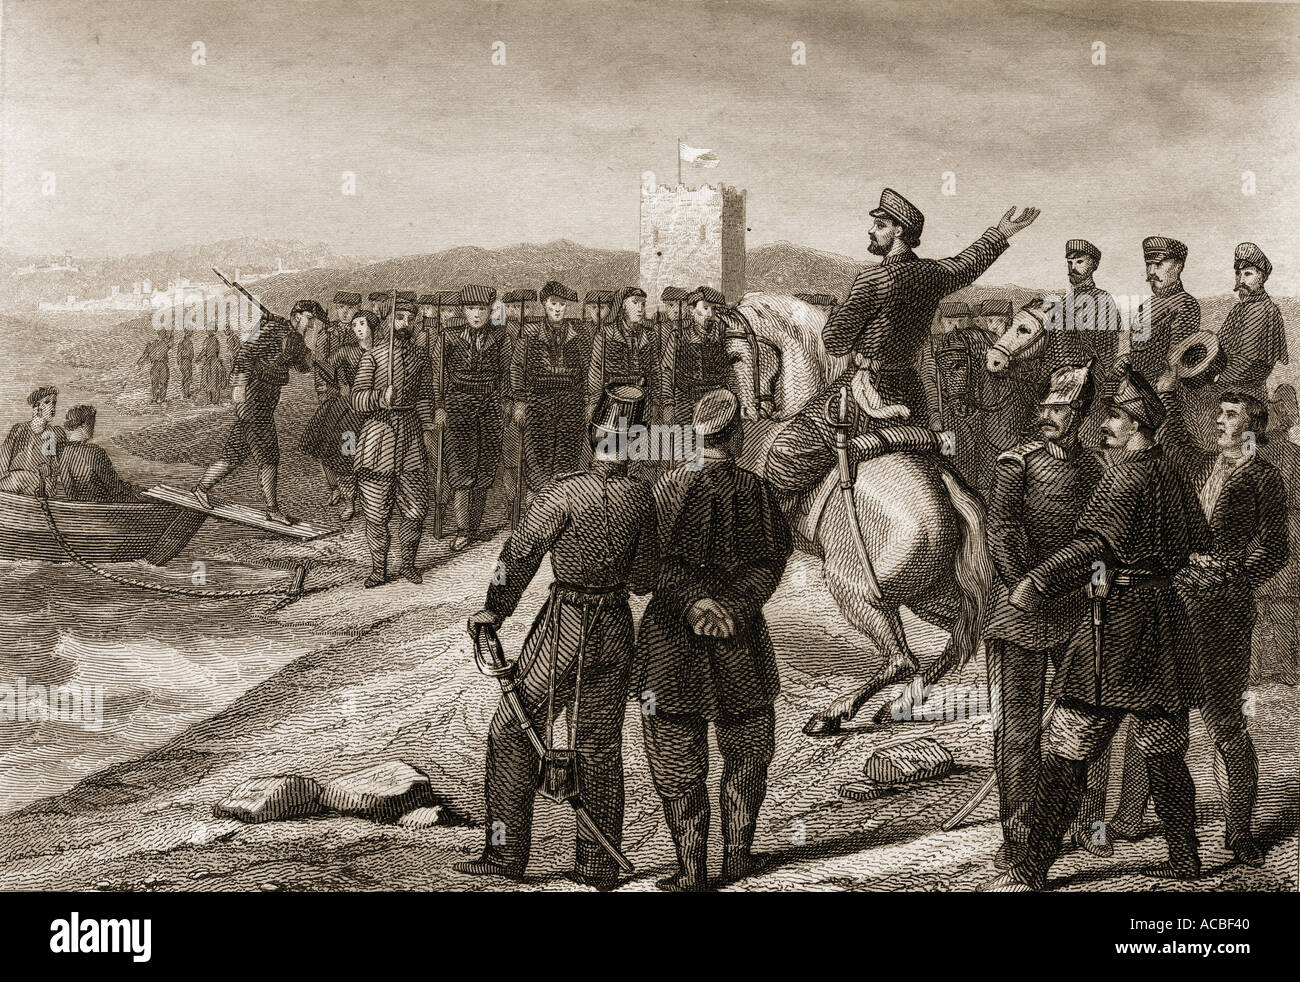 Die Grafen von Reus erhält die Freiwillige aus Cataluna in Afrika, 3. Februar 1860 im Hispano-Moroccan Krieg. Stockfoto